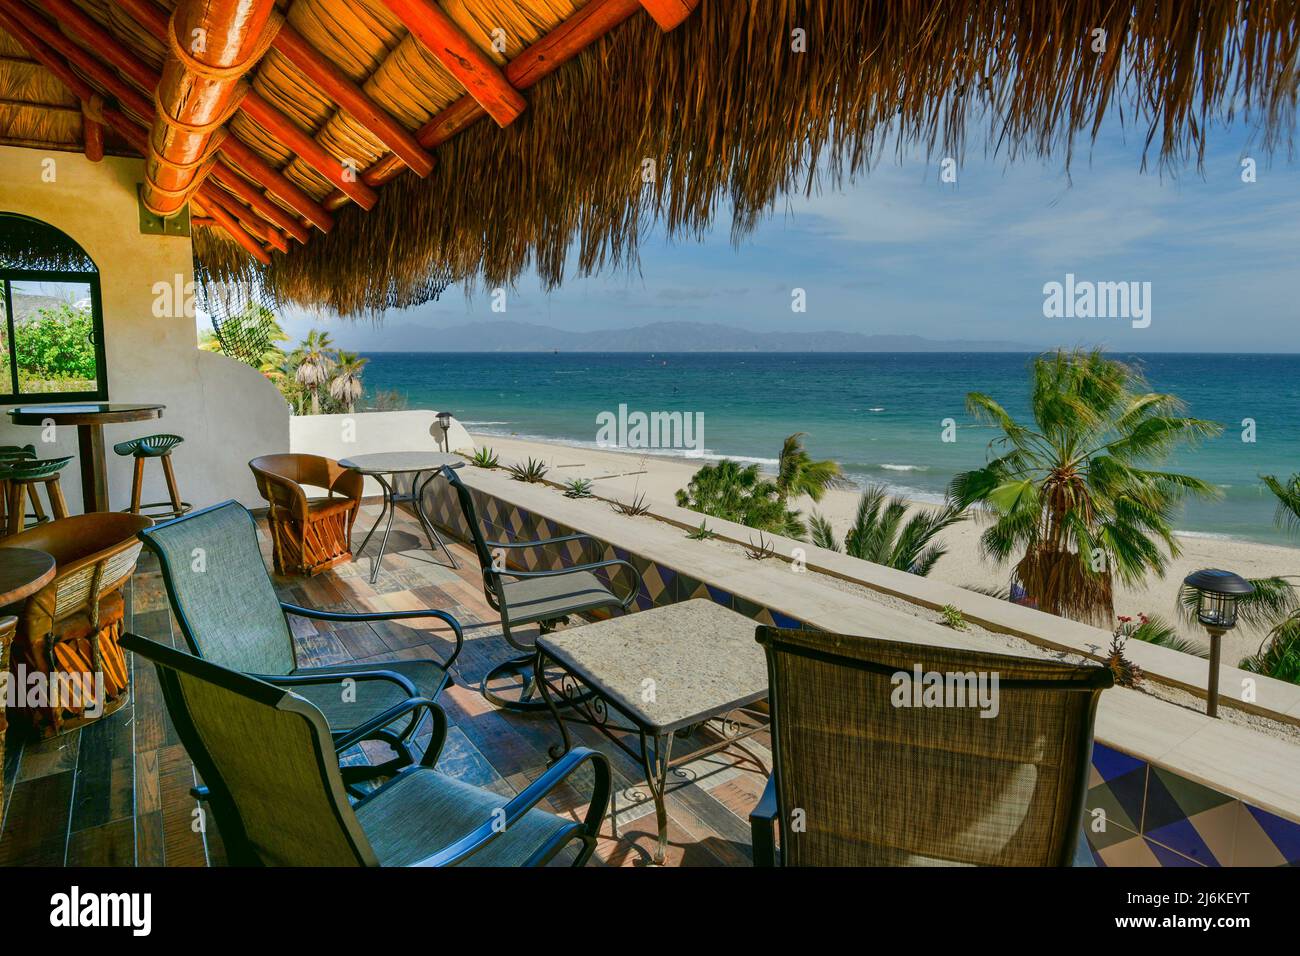 Mexico, Baja California Sur, El Sargento, Ventana Bay Resort Stock Photo